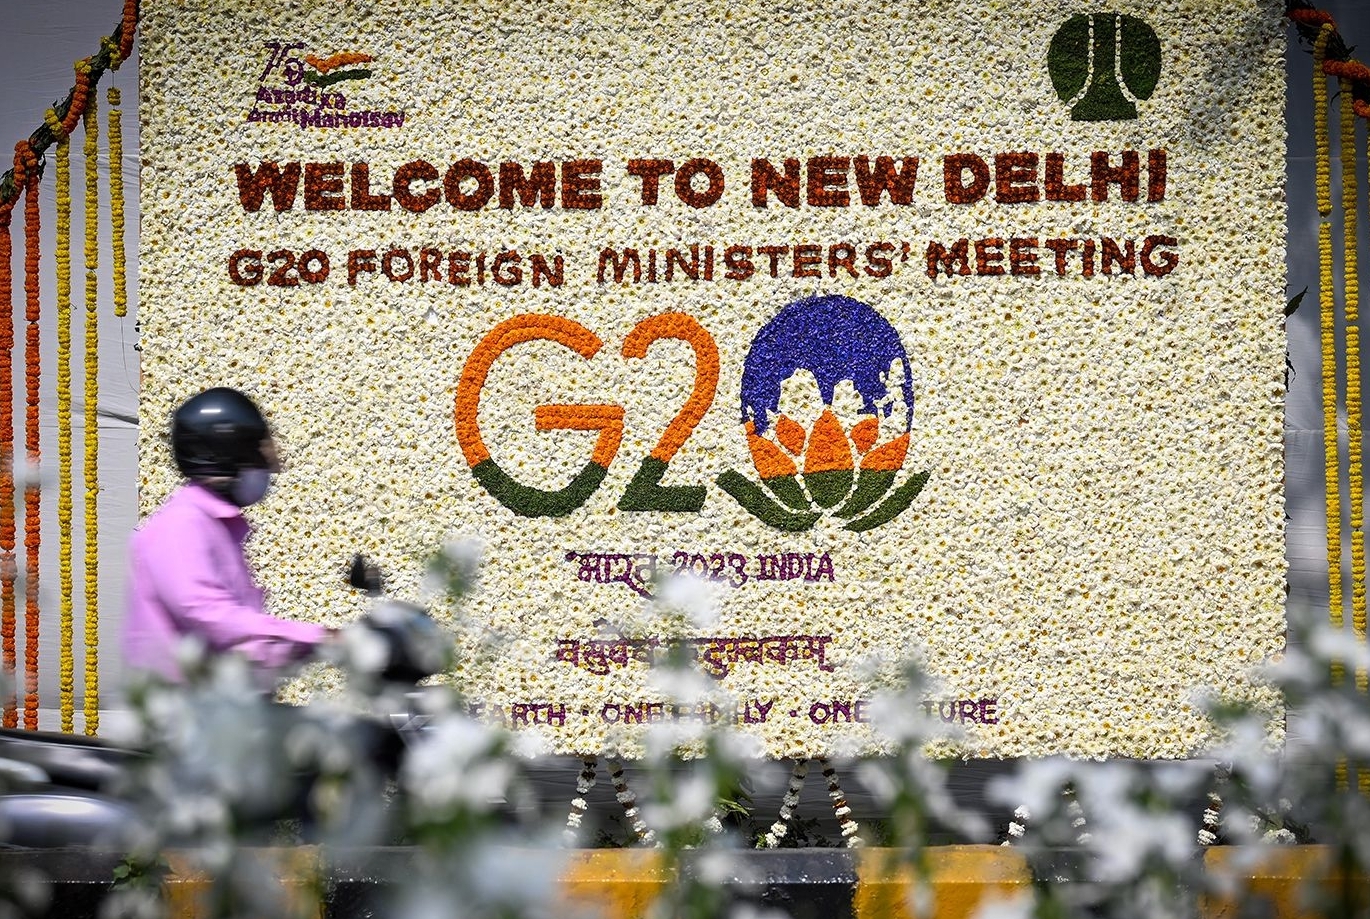 Vì sao Hội nghị G20 thất bại?